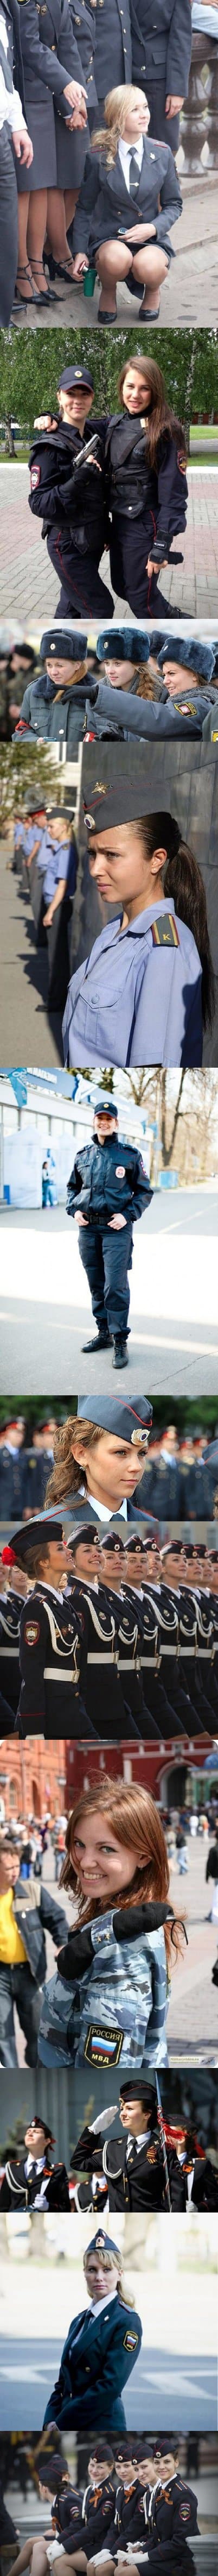 sexy Polizei